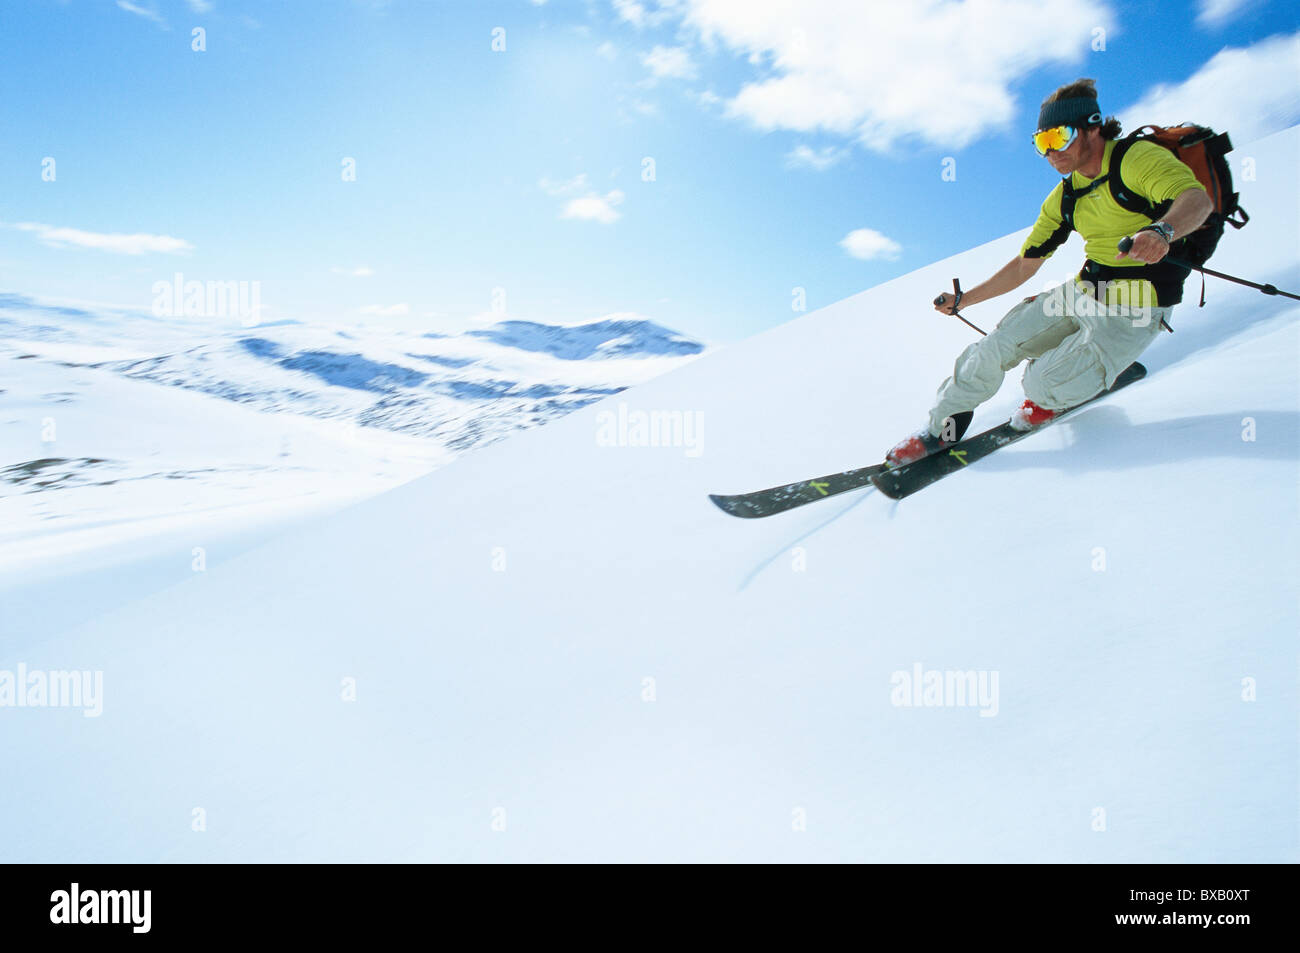 Man skiing in mountain scenery Stock Photo